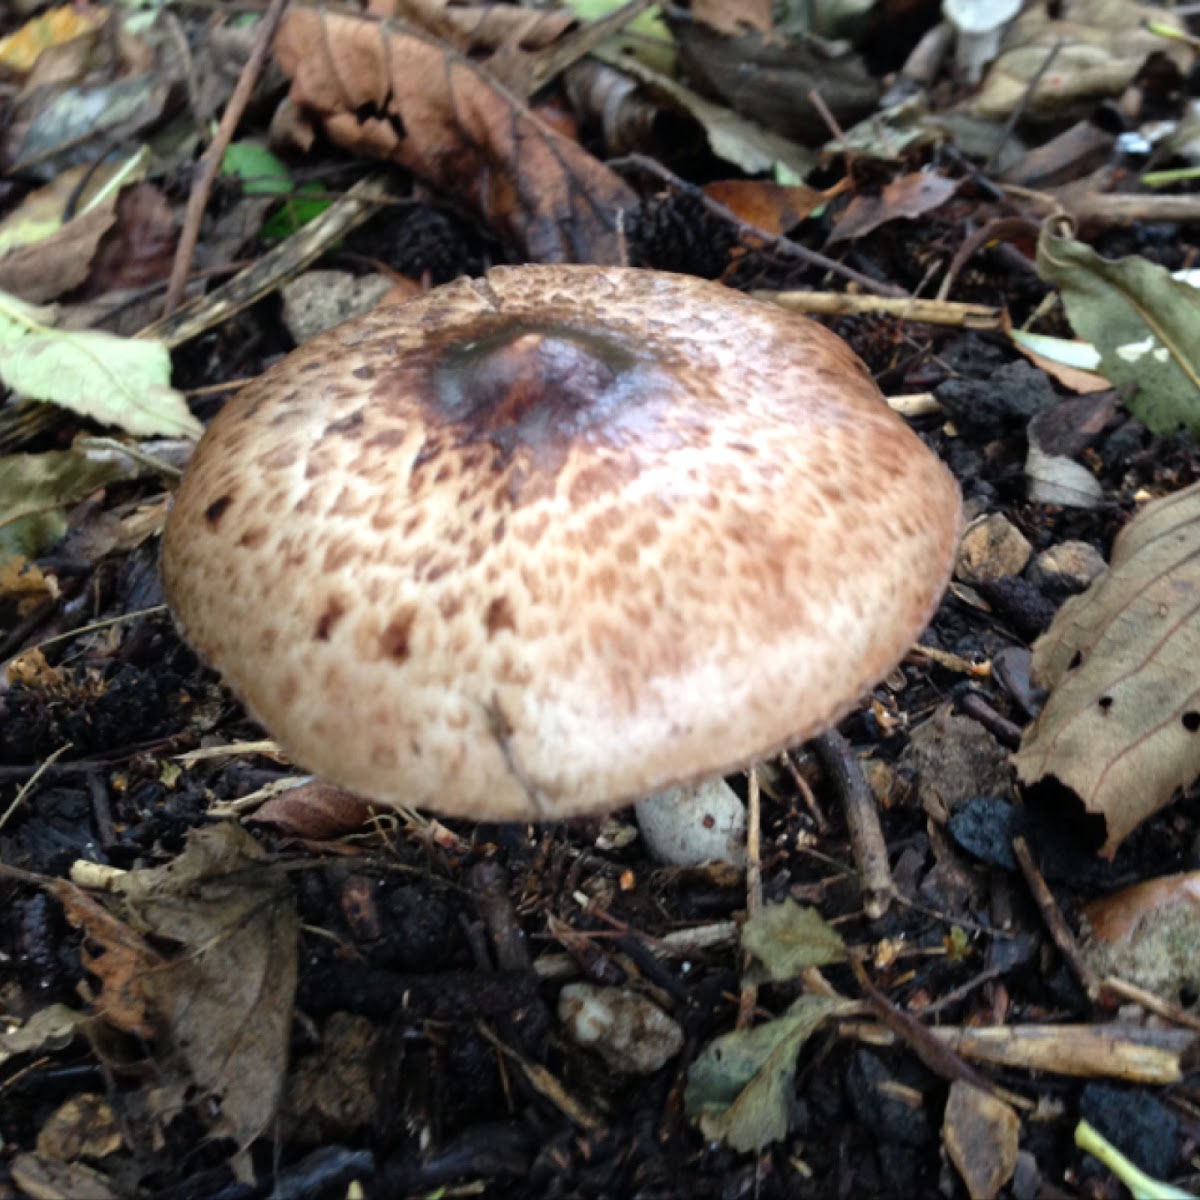 Scaly wood mushroom